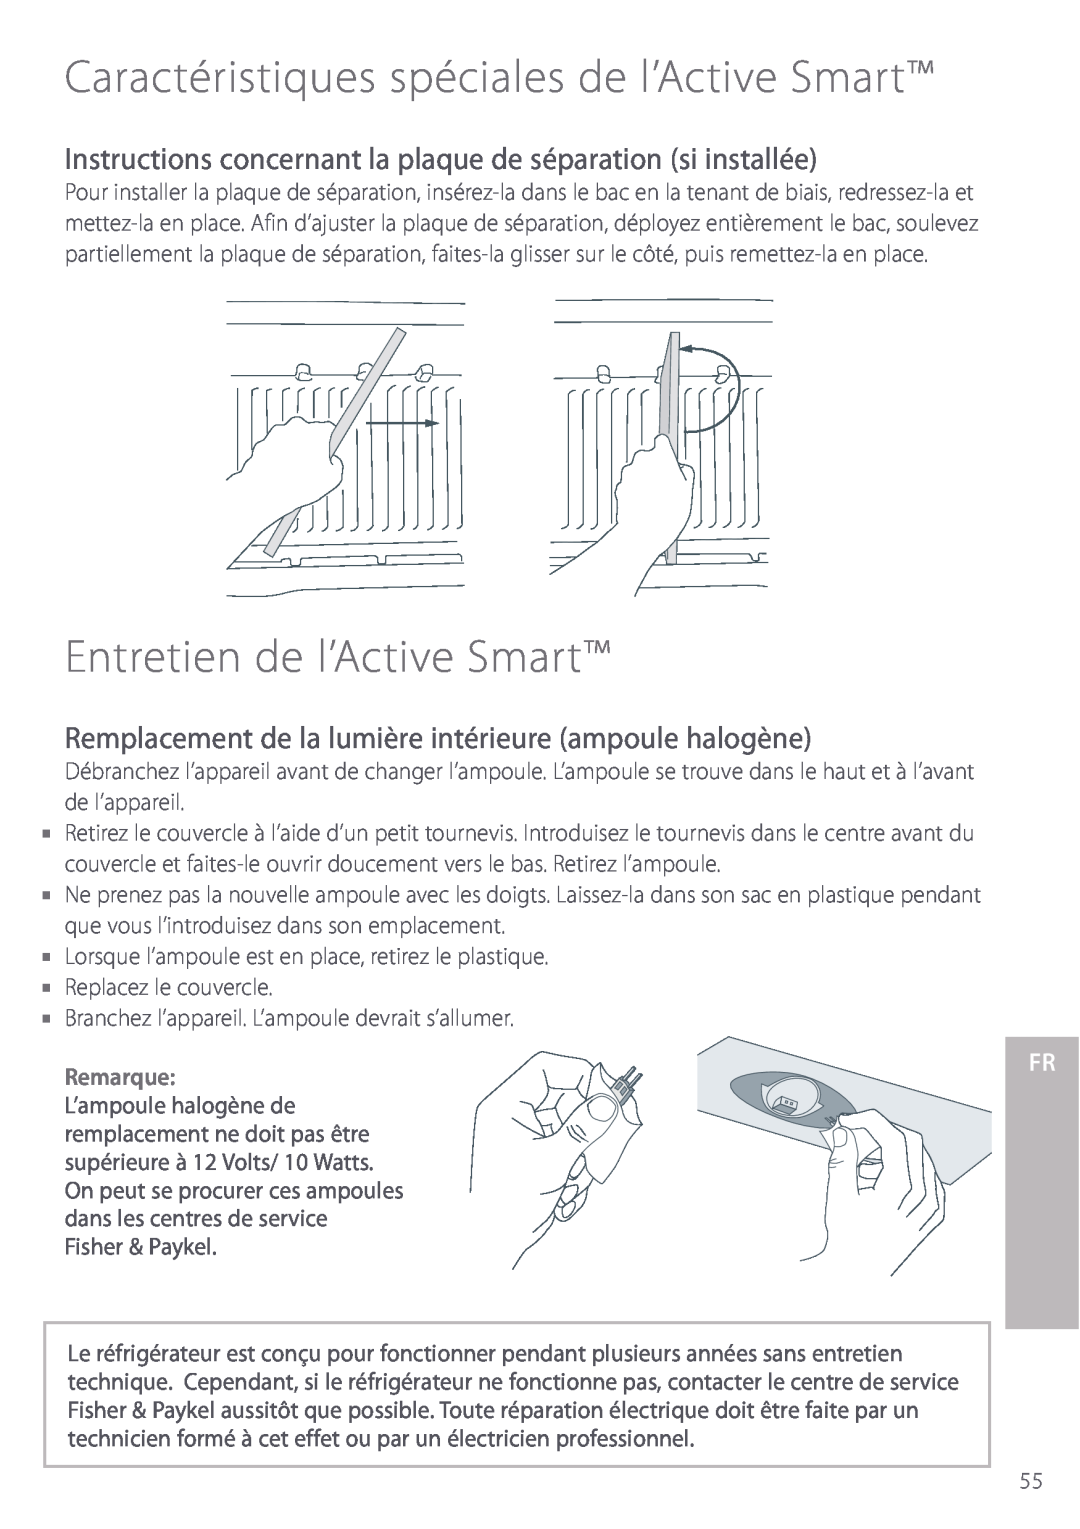 Fisher & Paykel Entretien de l’Active Smart, Instructions concernant la plaque de séparation si installée, Remarque 